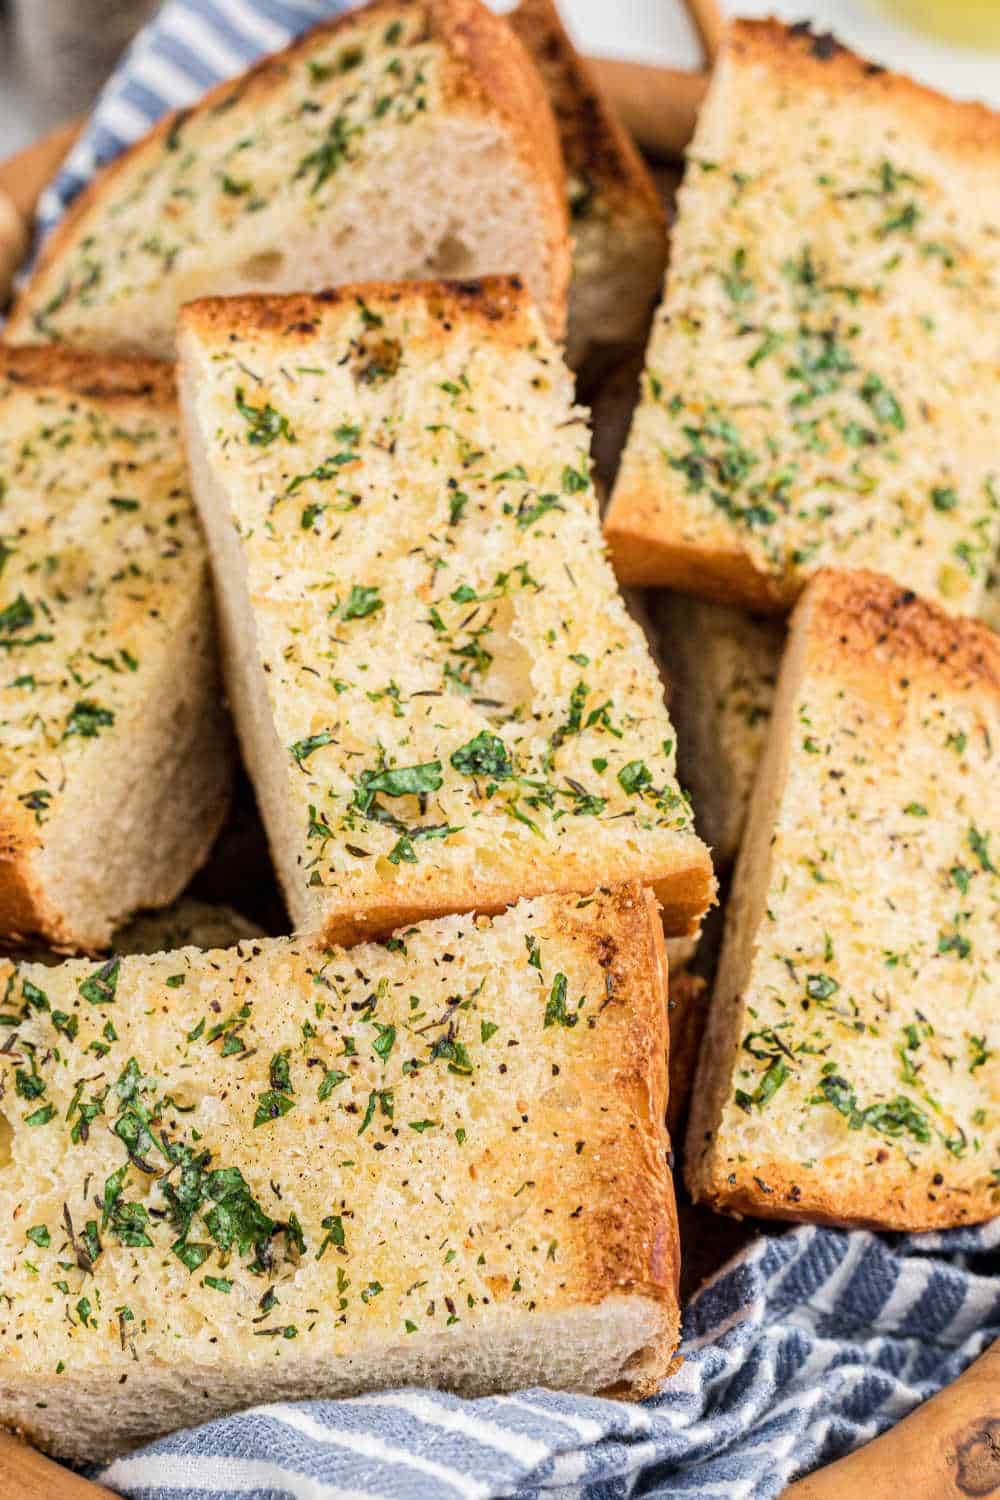 Pieces of garlic bread in a basket.